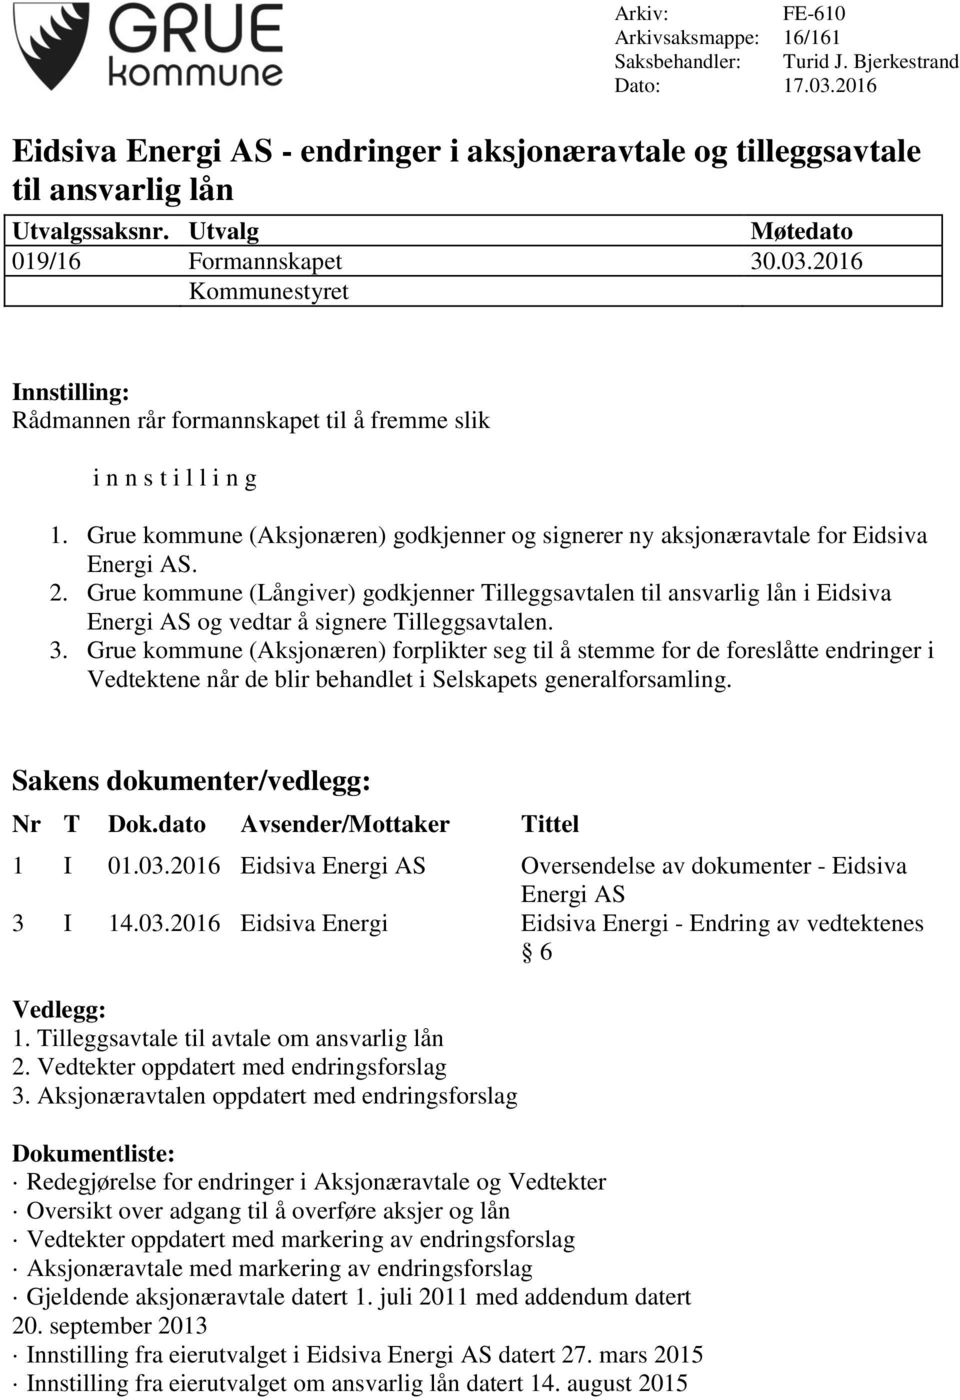 Grue kommune (Aksjonæren) godkjenner og signerer ny aksjonæravtale for Eidsiva Energi AS. 2.